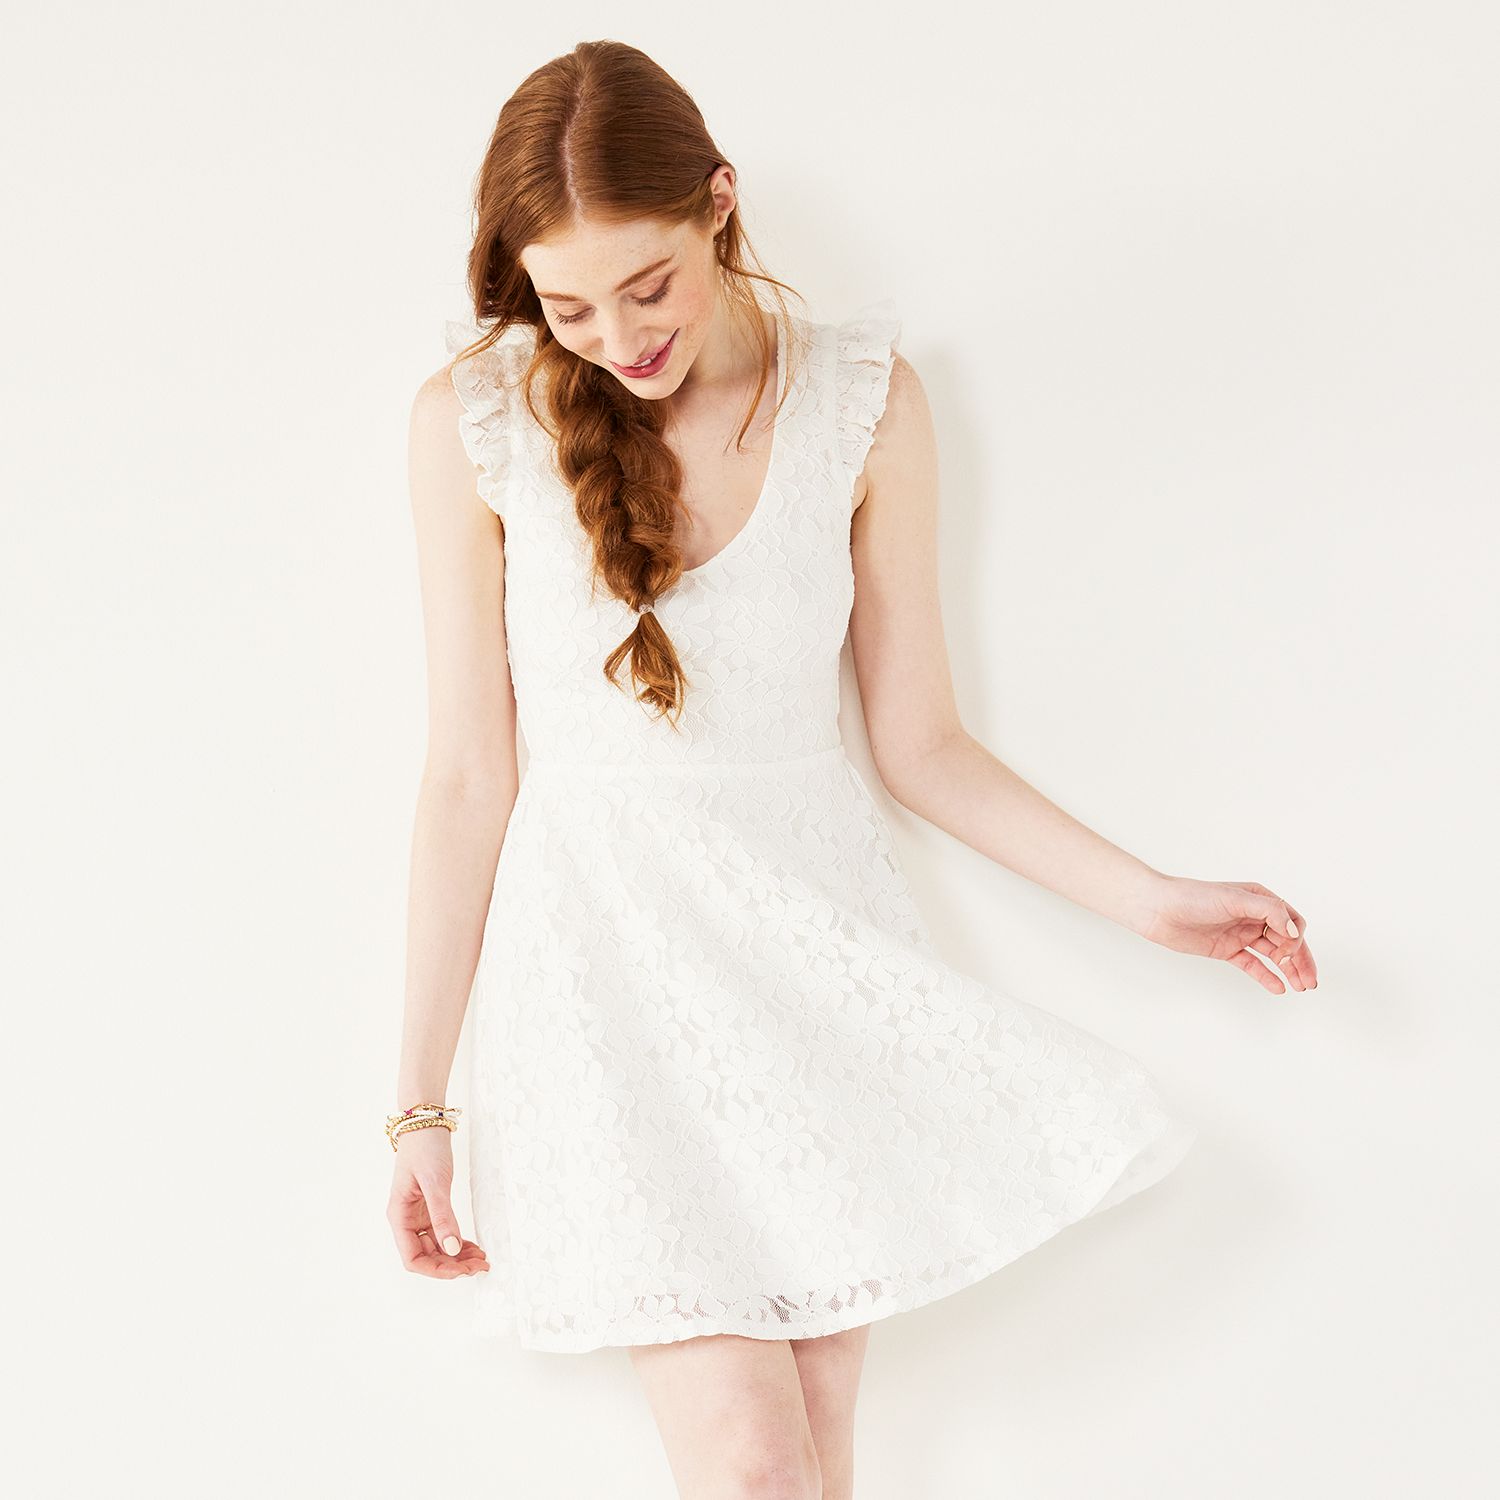 Short Juniors White Dresses, Clothing ...